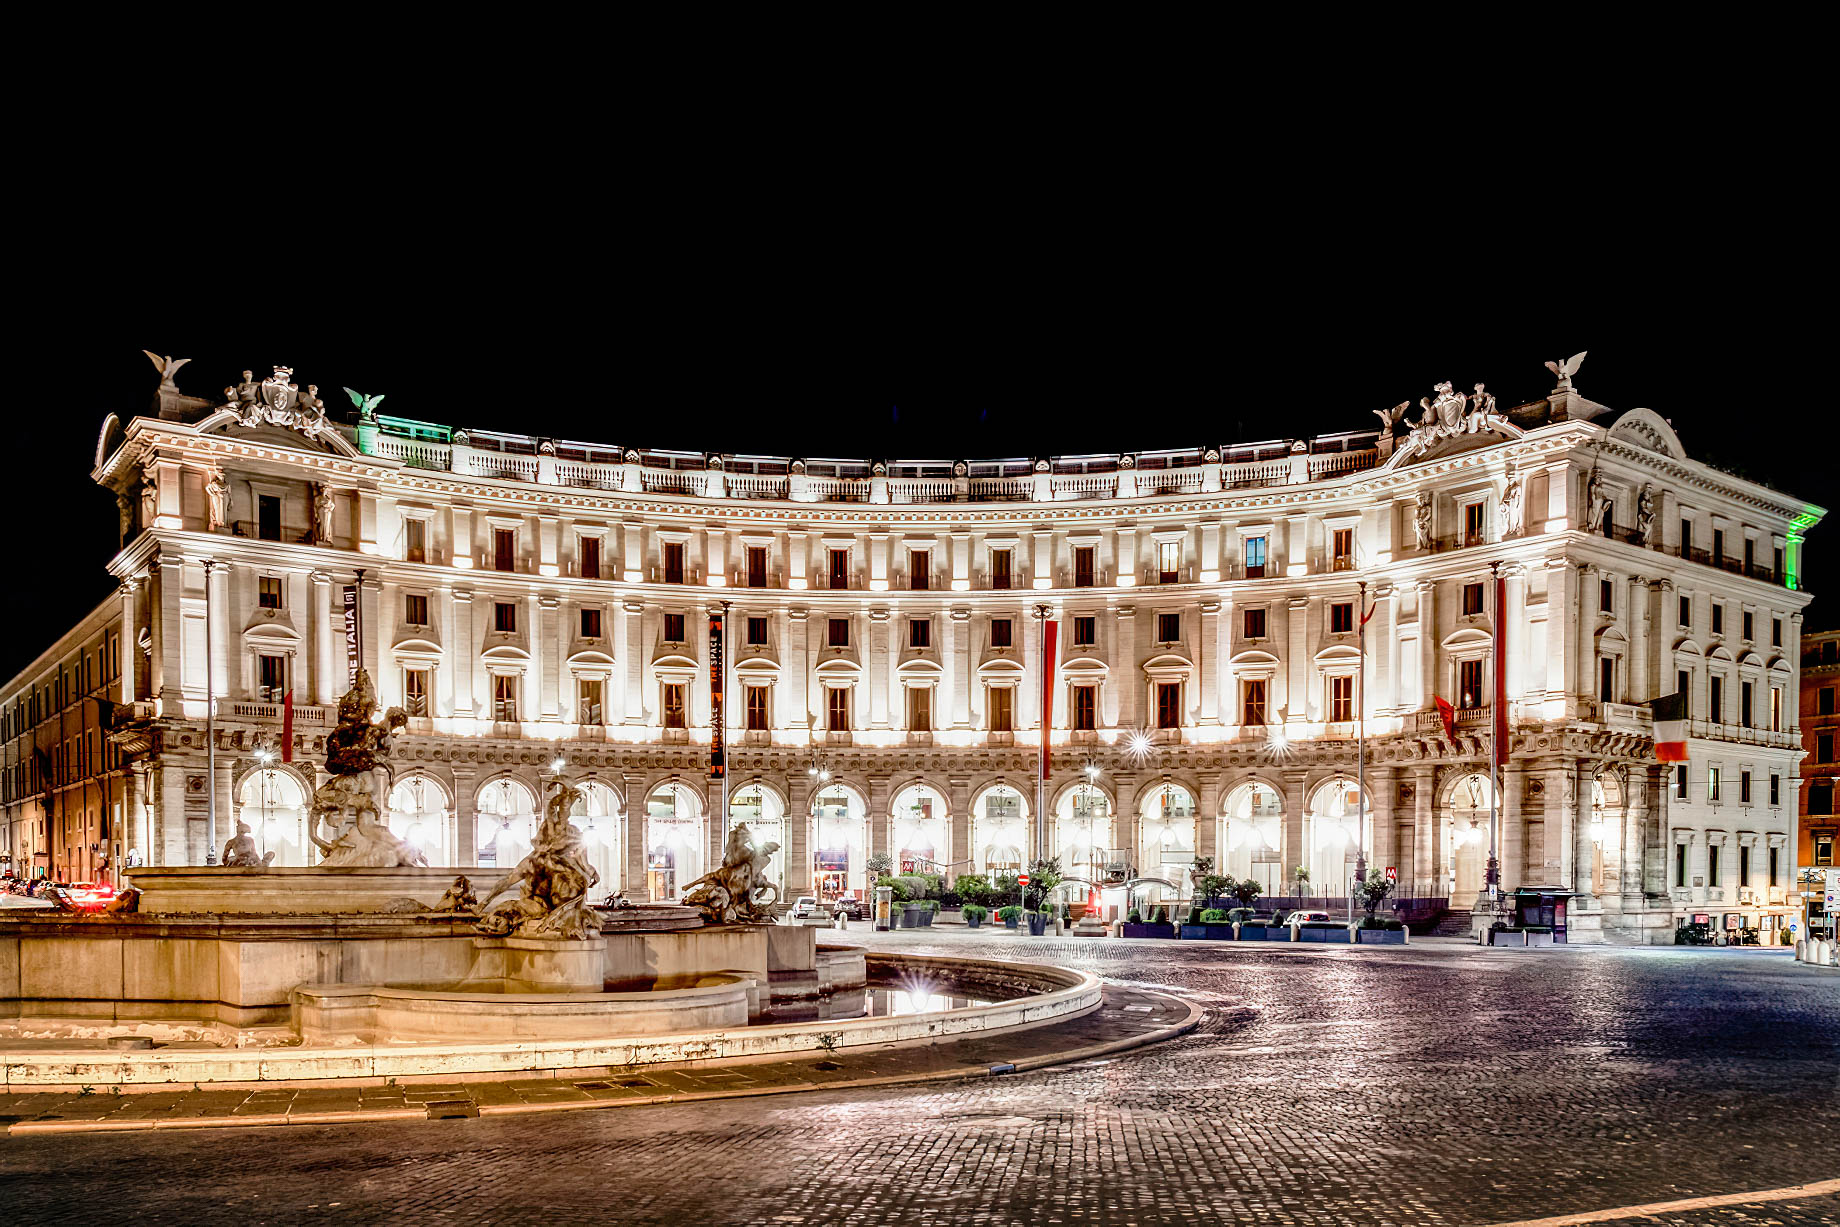 Anantara Palazzo Naiadi Rome Hotel – Rome, Italy – Hotel Exterior Night